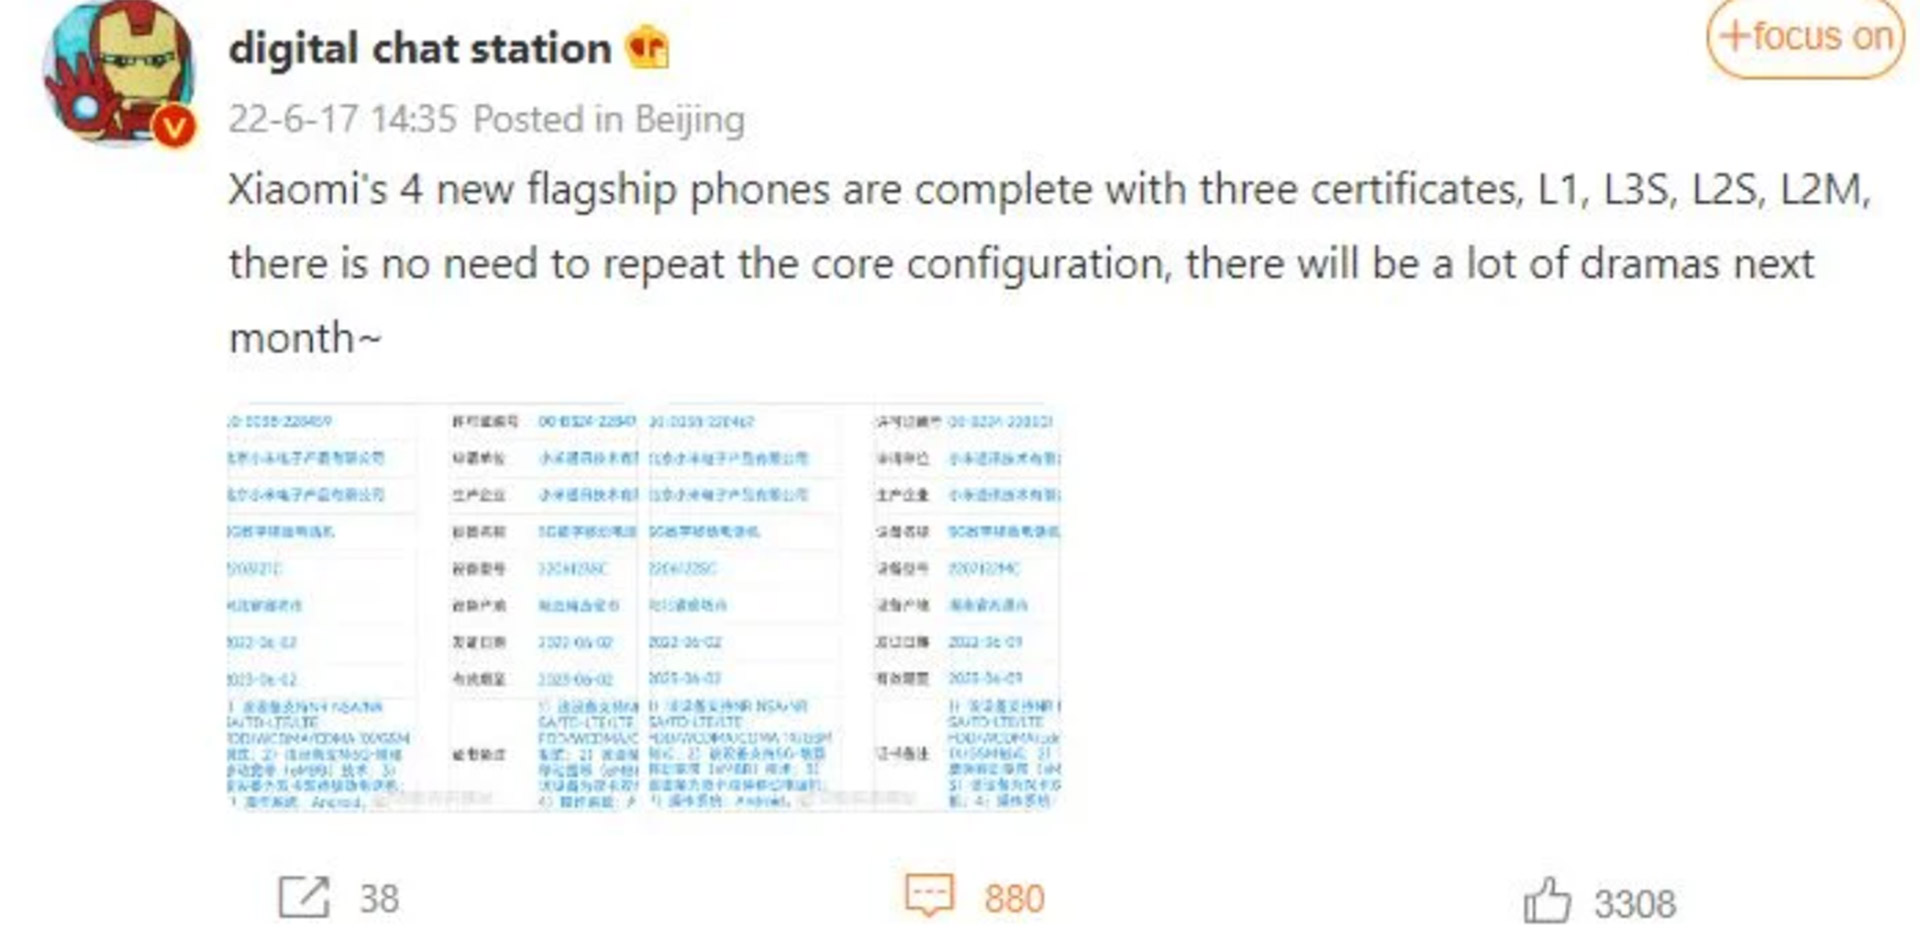 اسکرین شات پست Digital Chat Station درباره فهرست شدن اسامی پرچمداران جدید شیائومی